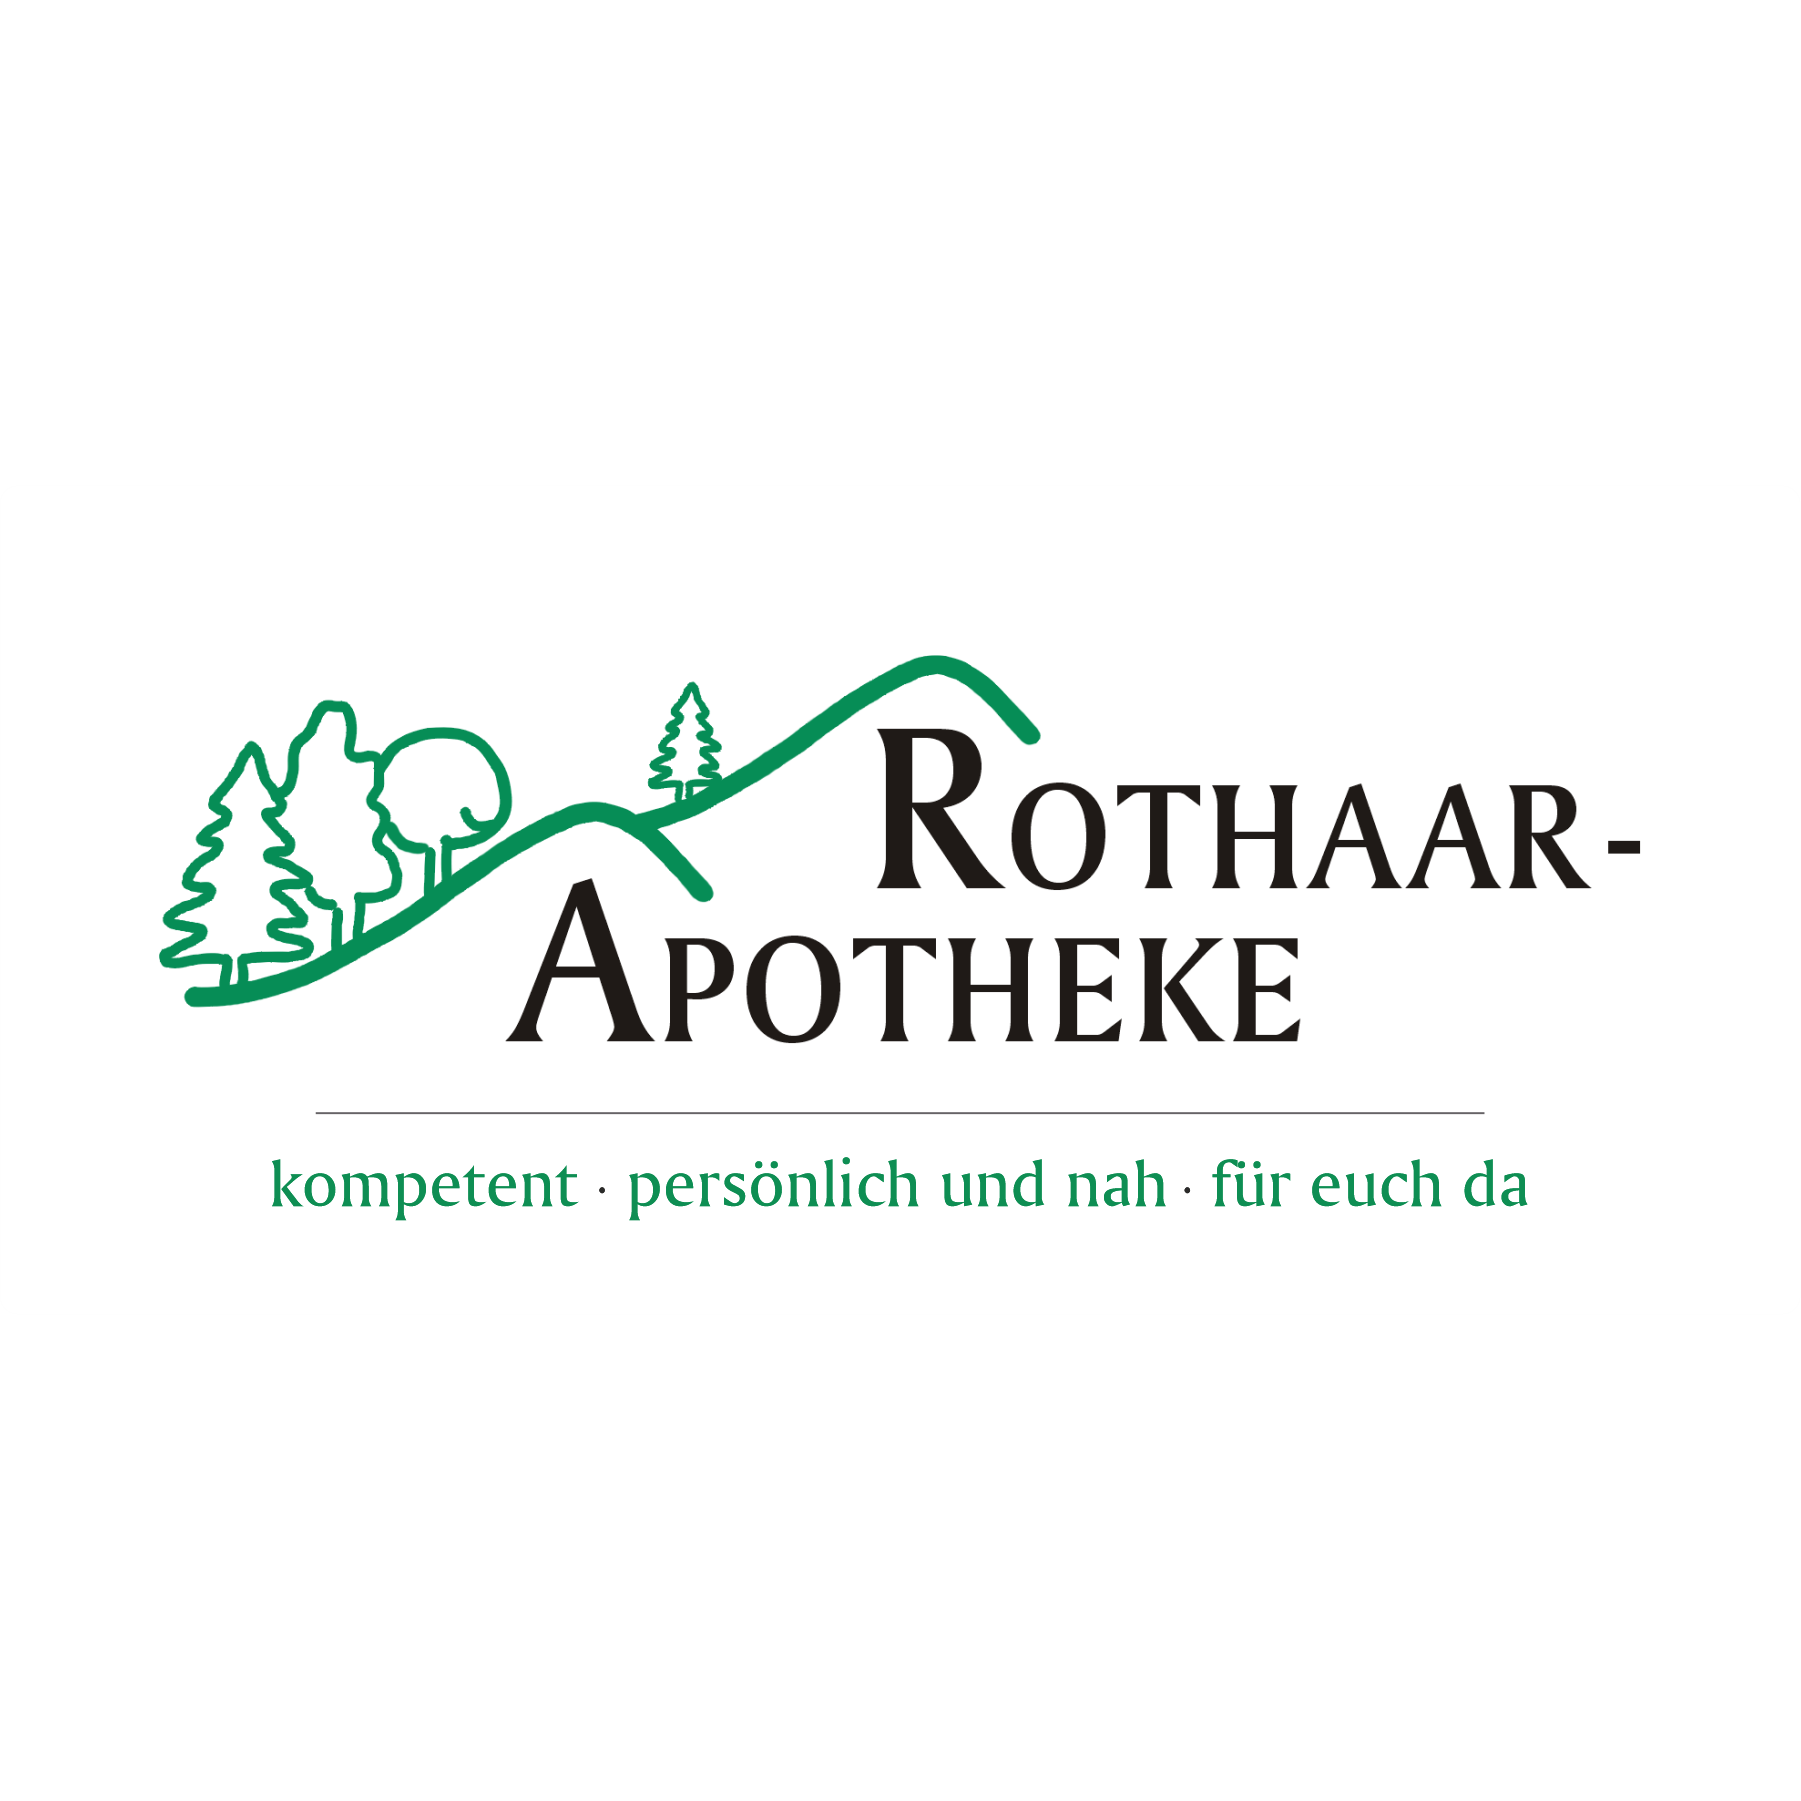 Rothaar-Apotheke in Bad Laasphe - Logo